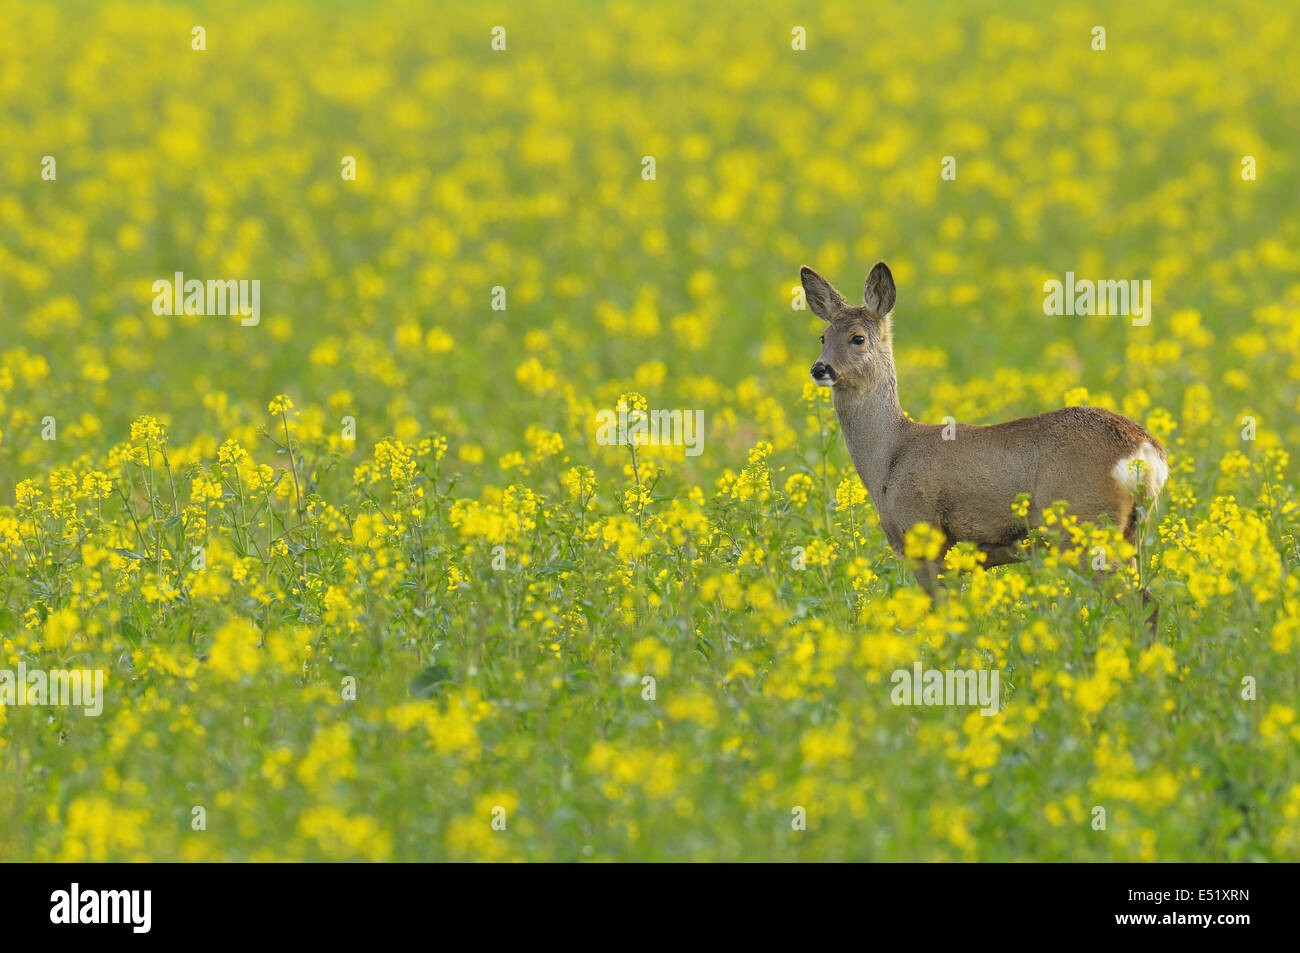 Roe deer, Capreolus capreolus, Germany Stock Photo